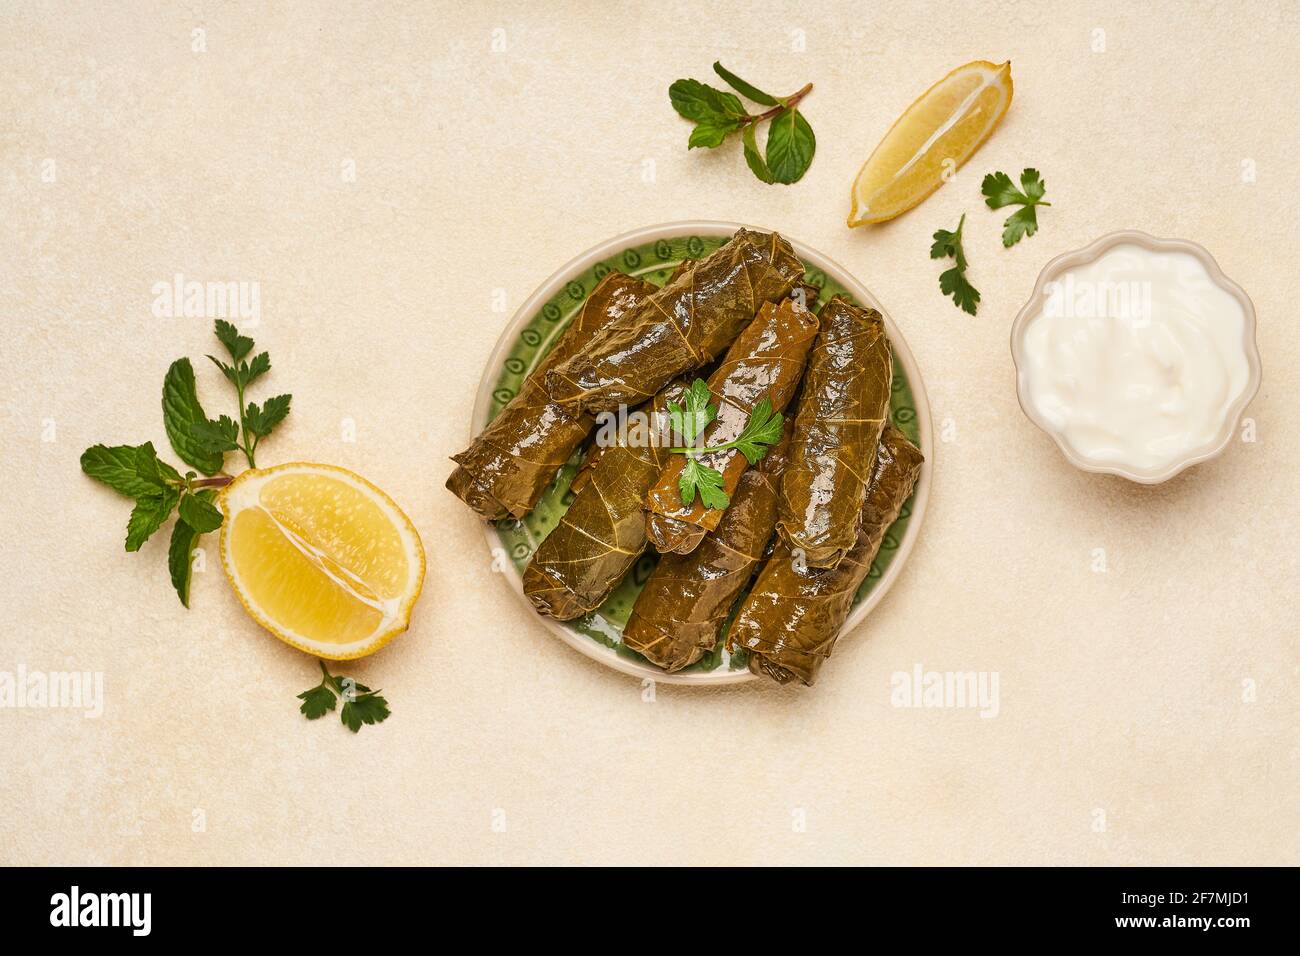 Foglie d'uva ripiene rotoli dolma. Cucina tradizionale middetarea, caucasica, turca e arabica. Vista dall'alto Foto Stock